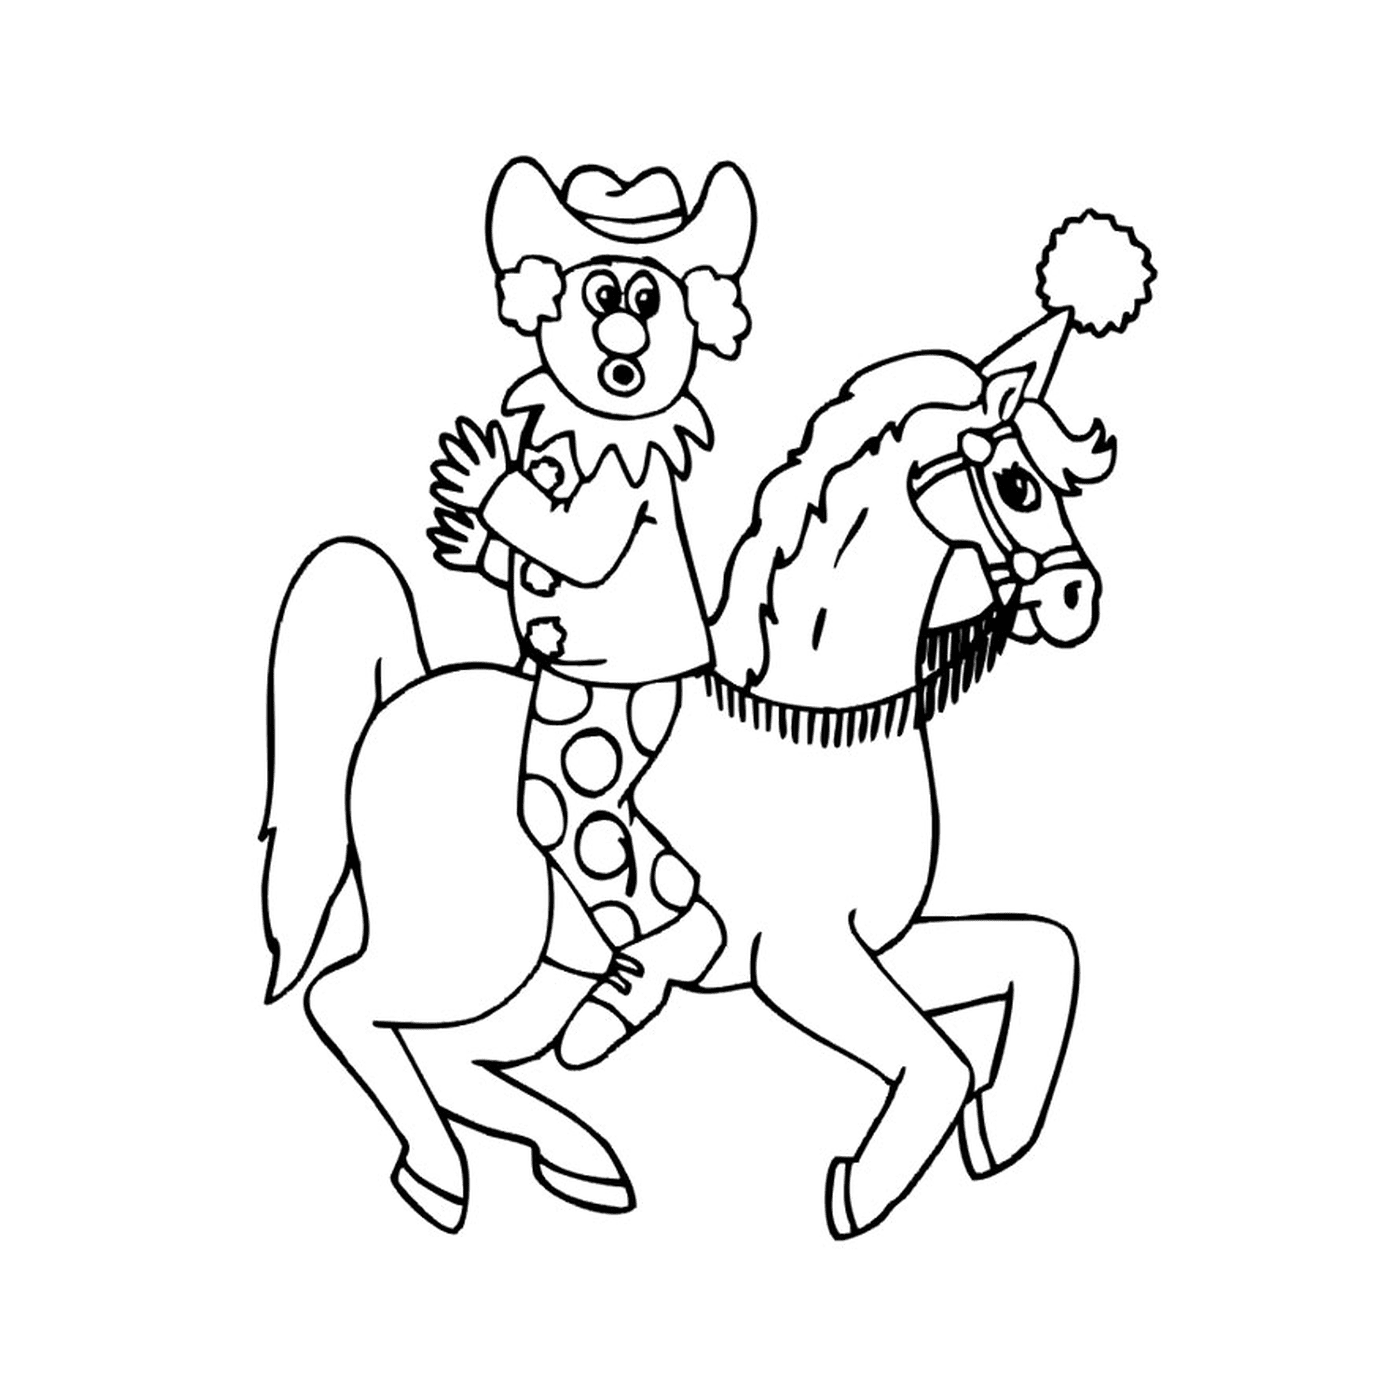   Chevaux de cirque - Une personne à cheval avec un chapeau 